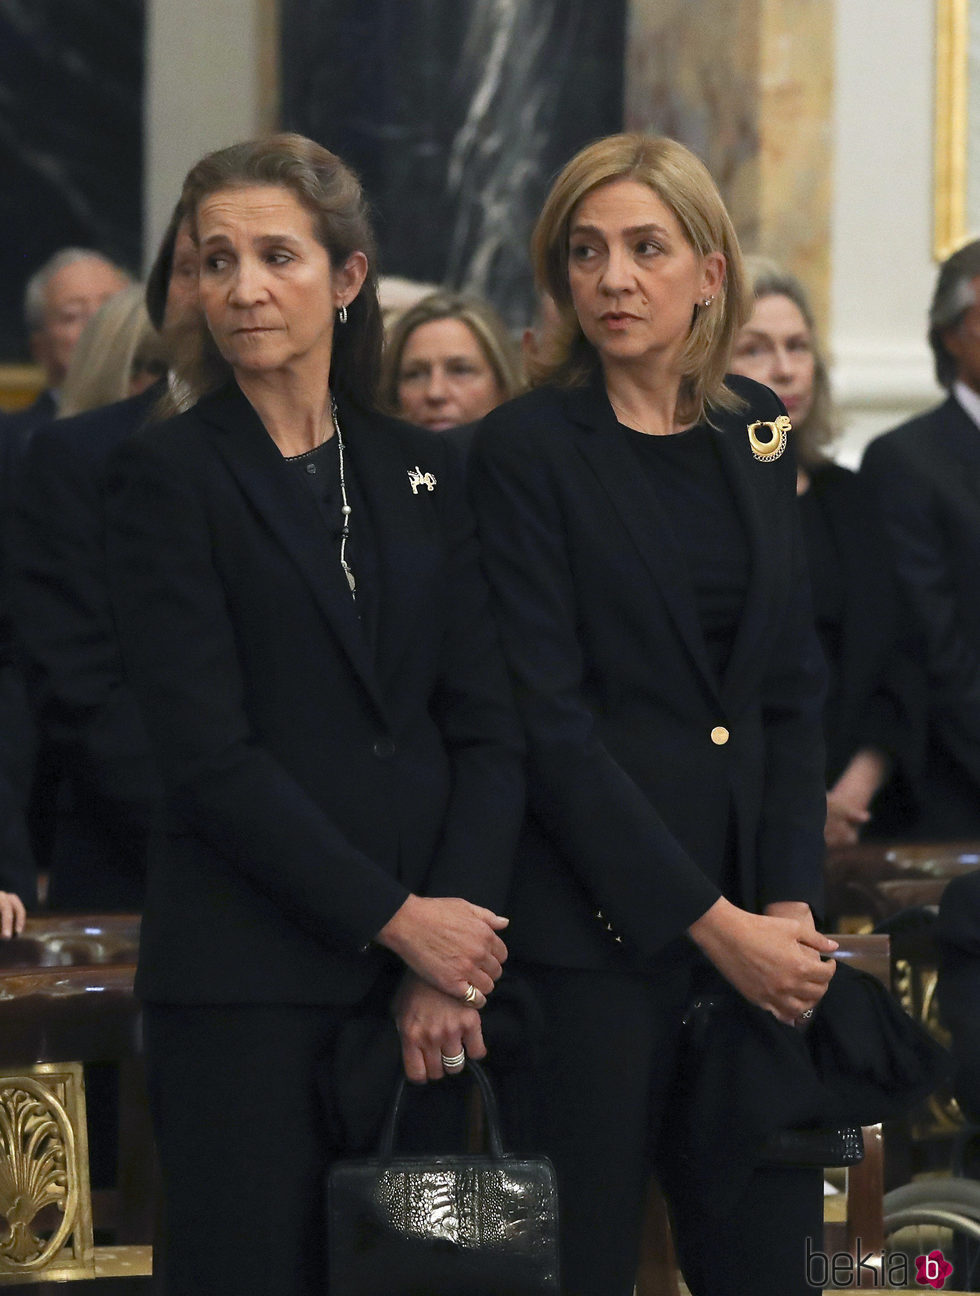 Las Infantas Cristina y Elena en el funeral de Alicia de Borbón-Parma